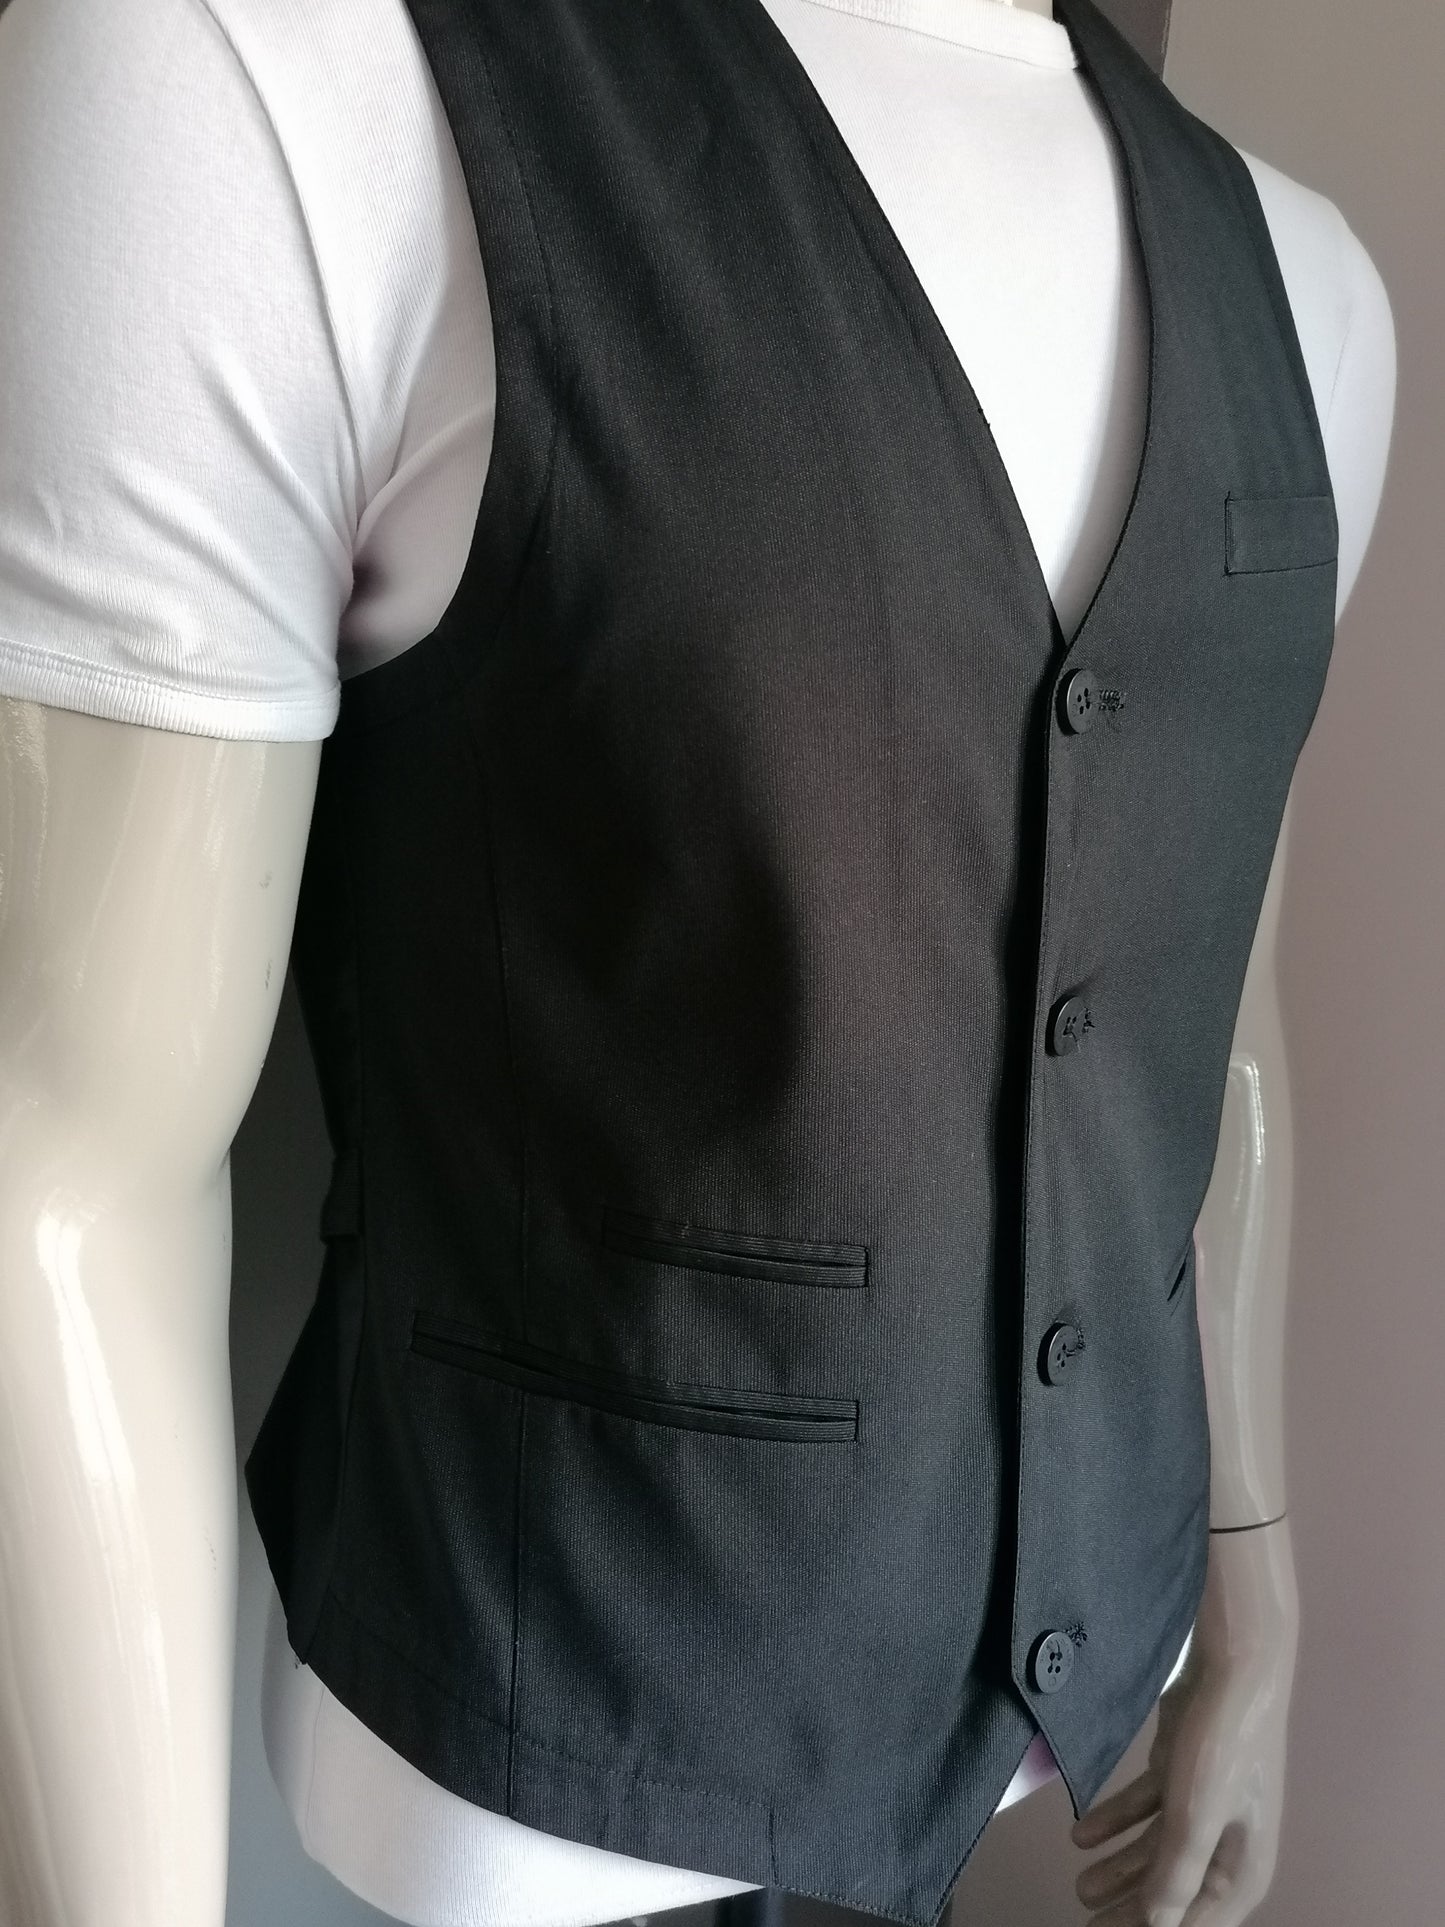 Soho waistcoat. Dark gray striped. Size 50 / M. # 261